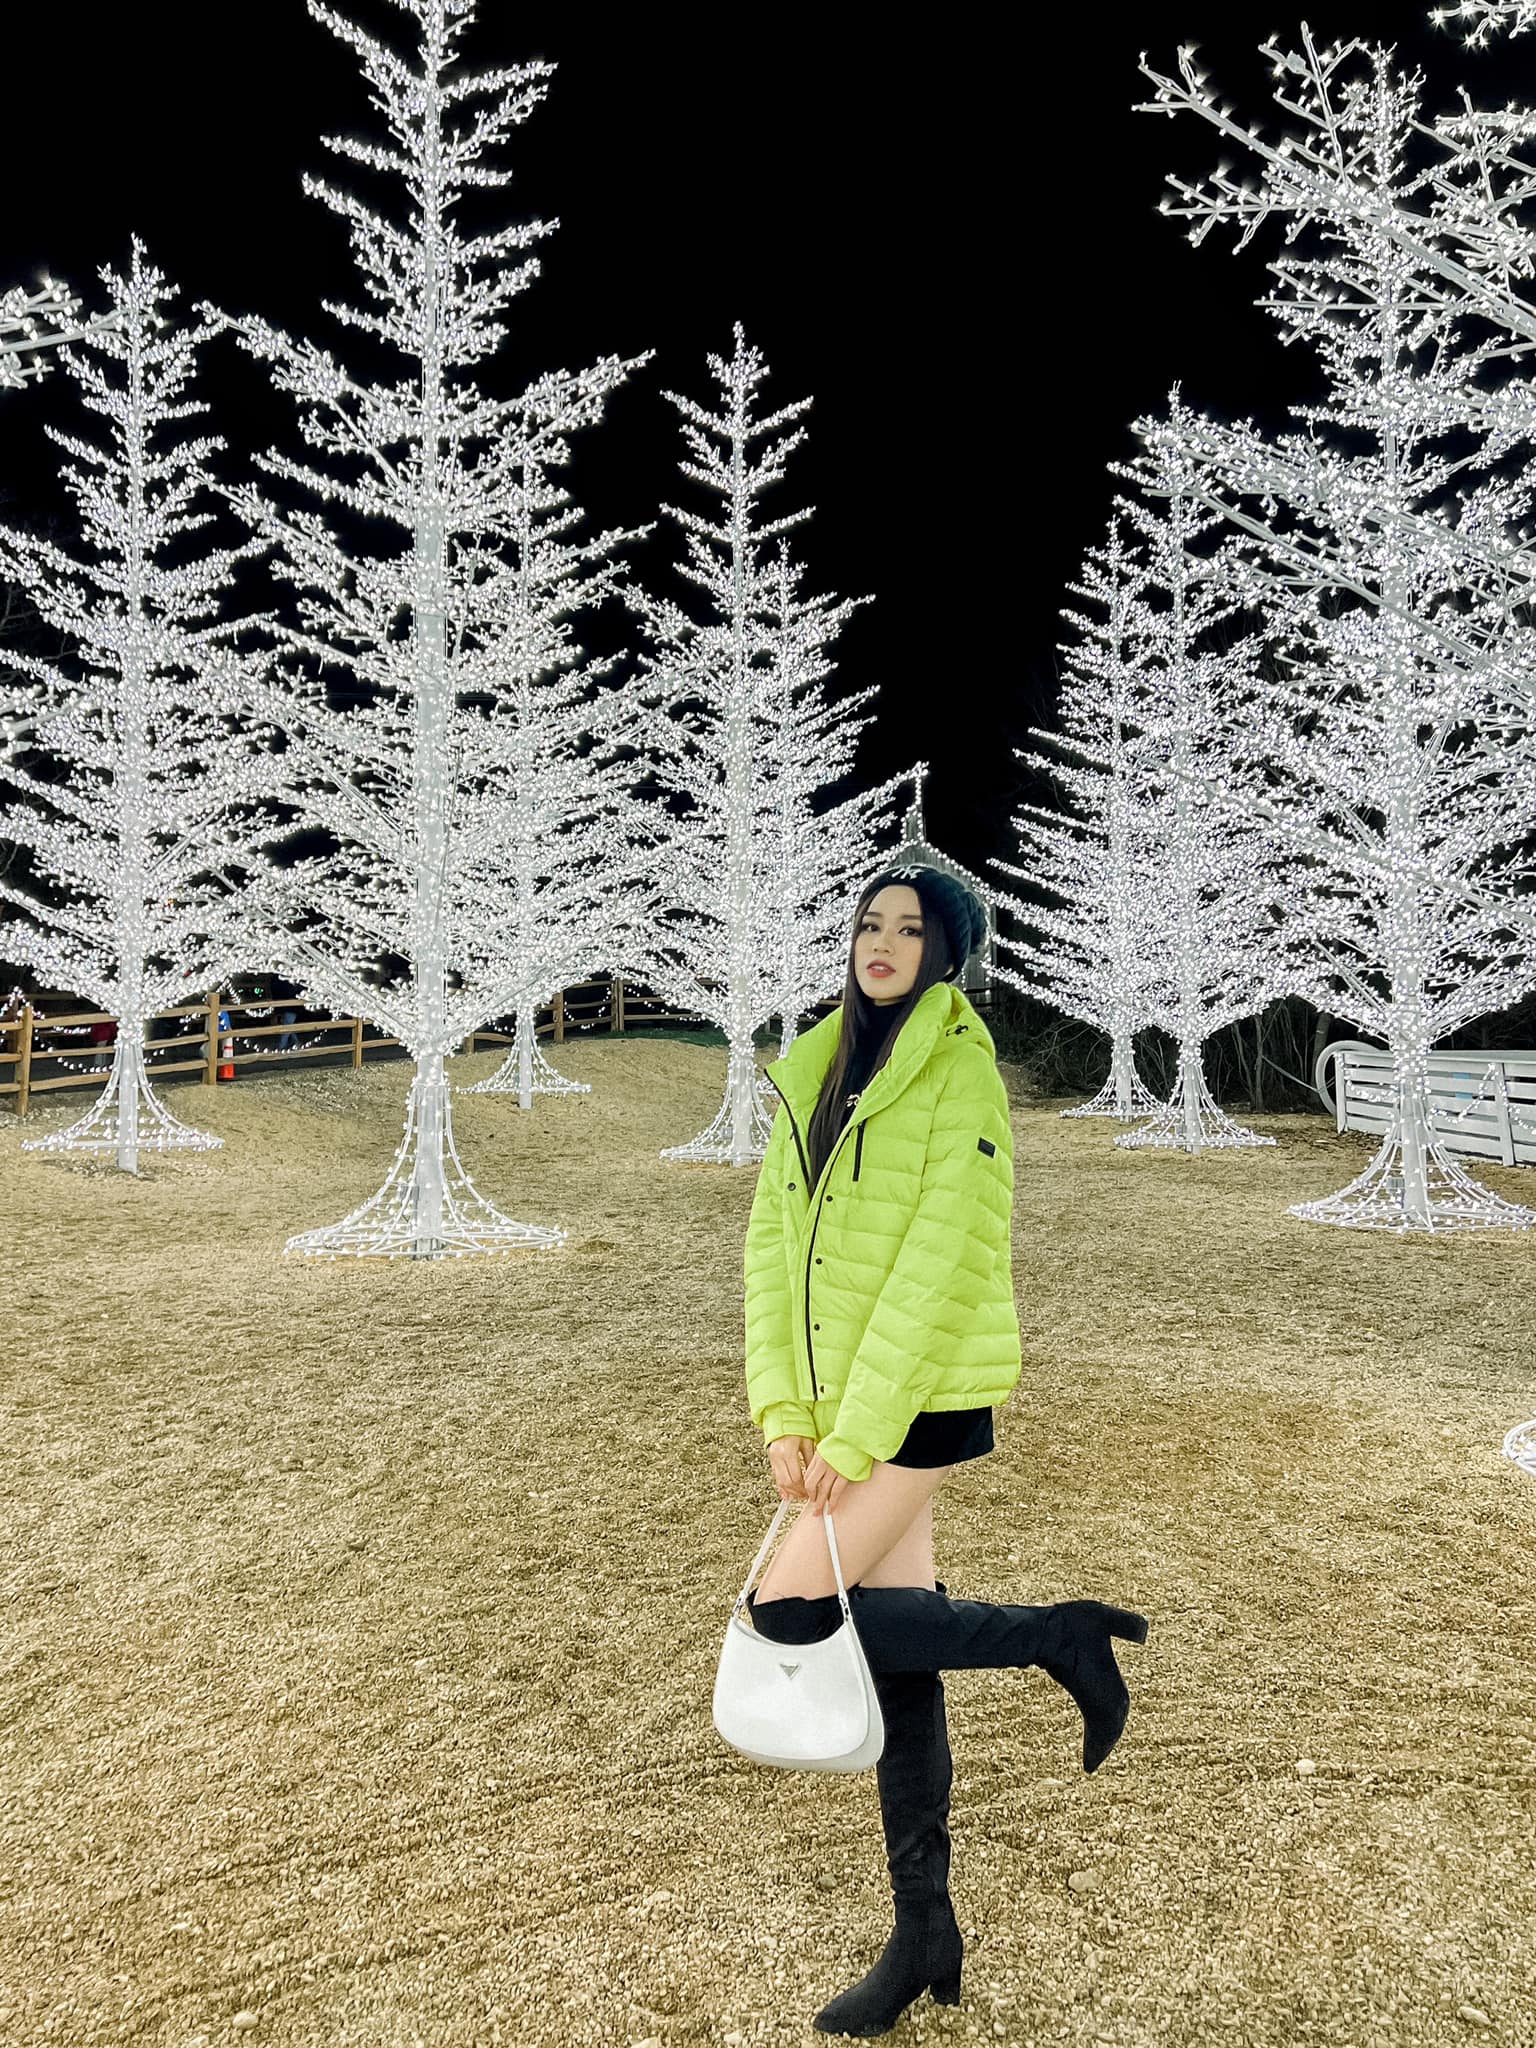 Đỗ Thị Hà đón Giáng sinh bên Mỹ với thời tiết lạnh 7 độ. Dù vậy, nàng hậu vẫn diện váy ngắn sang chảnh, tạo dáng quyến rũ dưới cây thông.